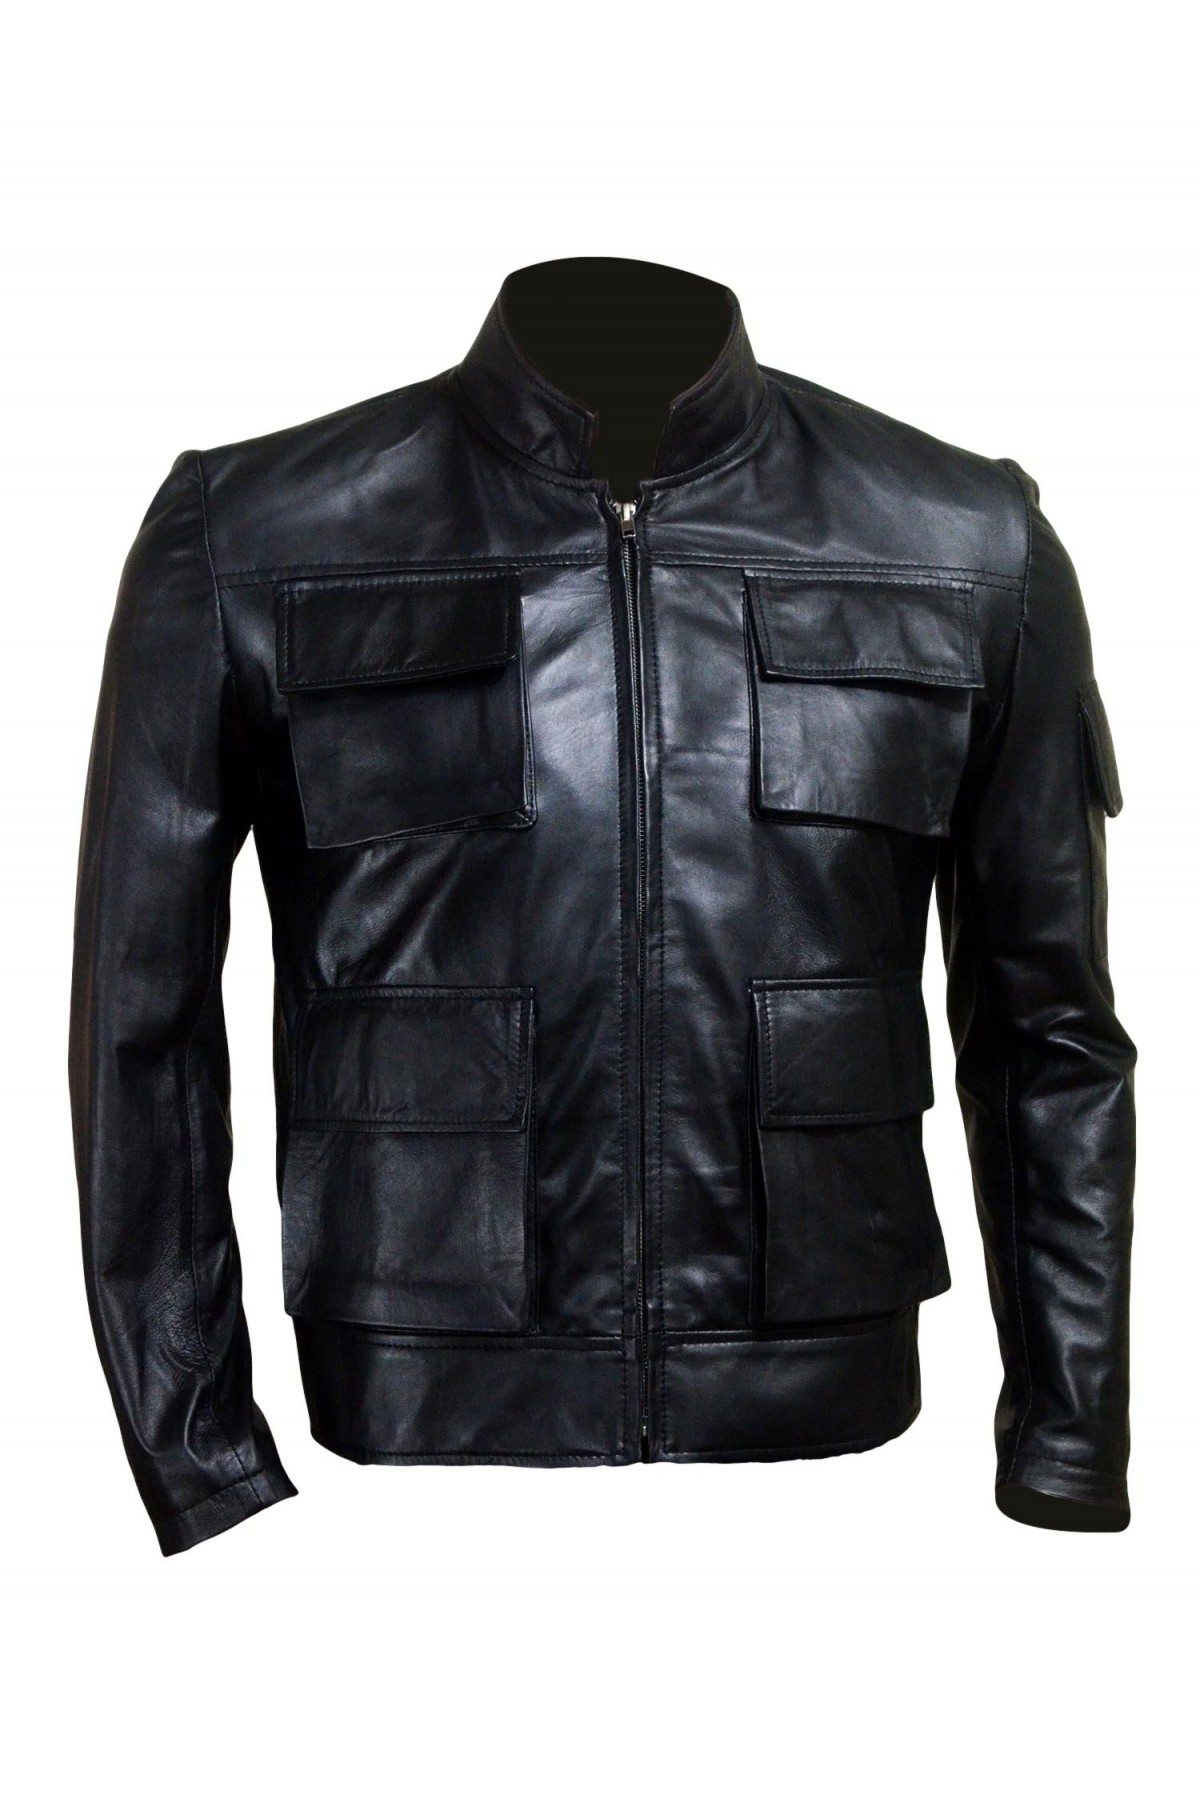 Han Solo Smuggler Leather Jacket - Americanleatherjacket.com